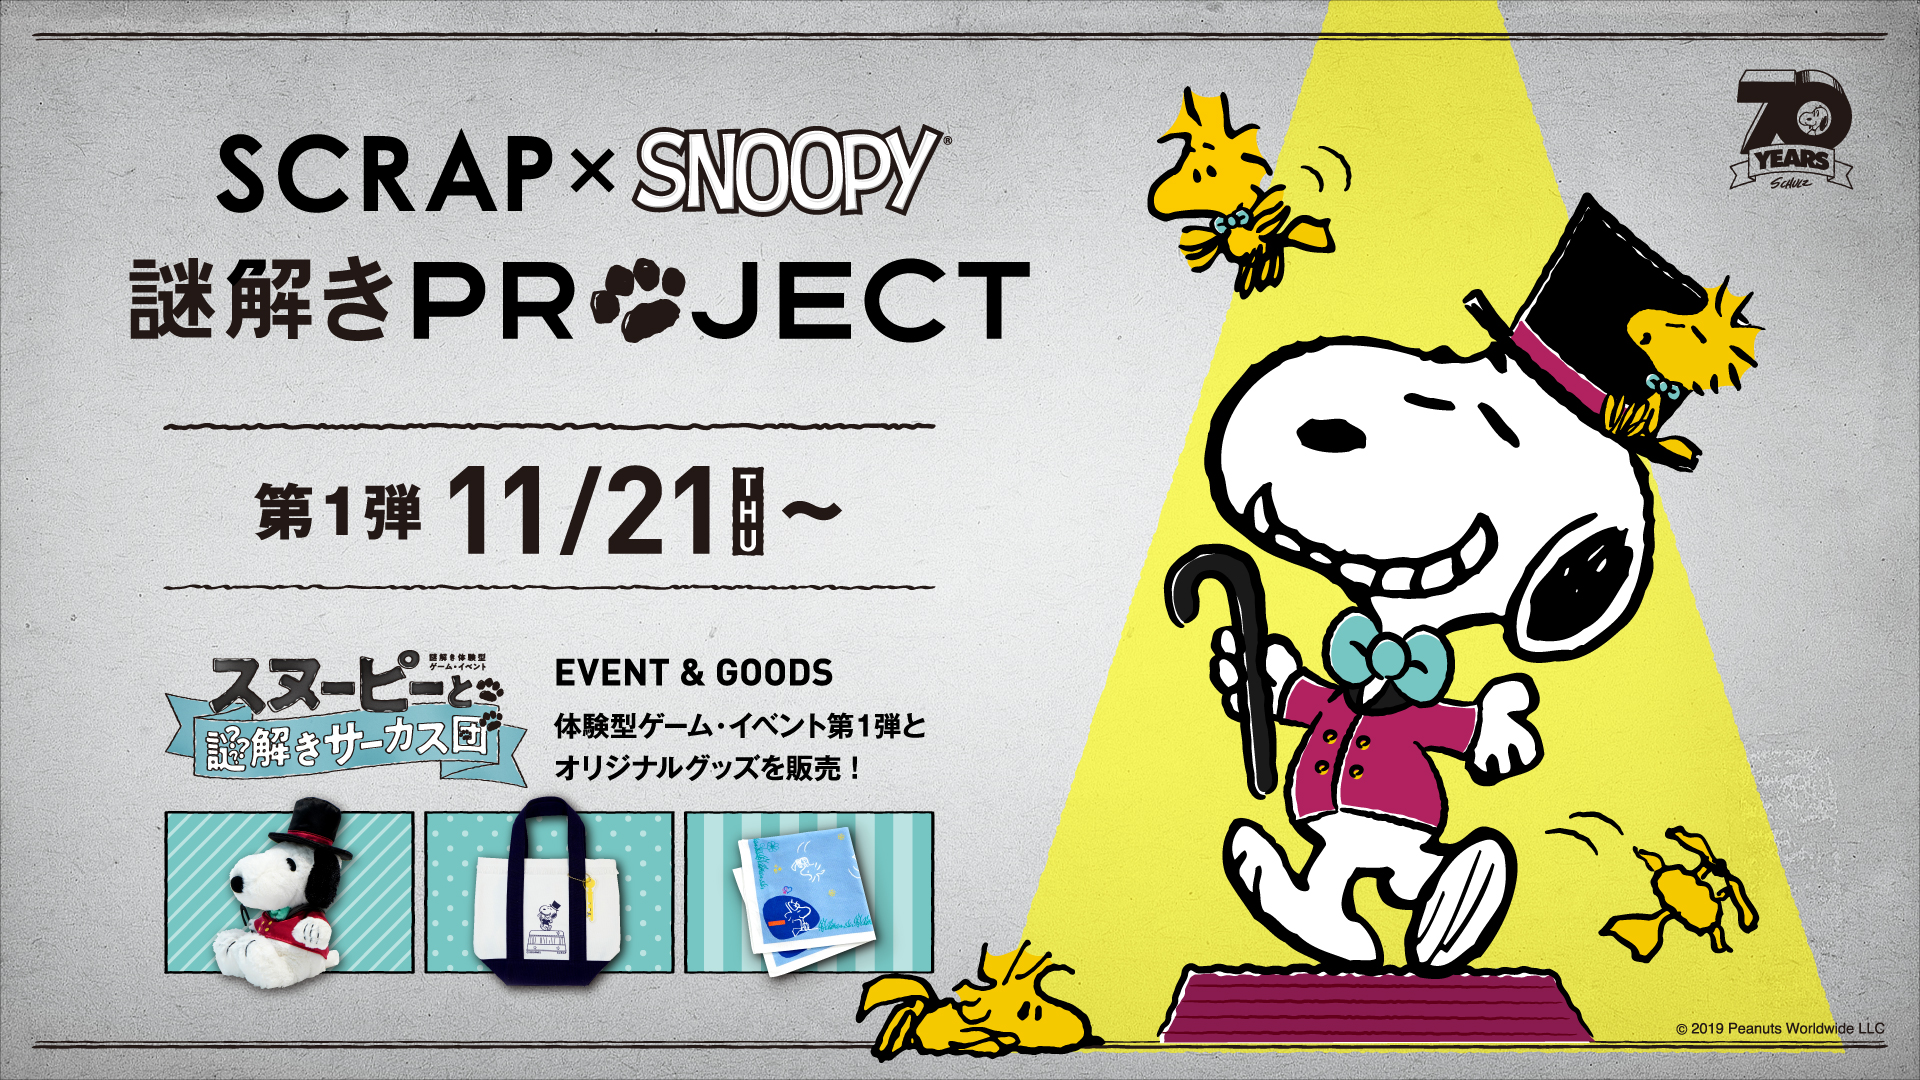 日本初 スヌーピーと 謎解き でコラボレーション Scrap Snoopy 謎解きproject が11月21日 木 より始動 お知らせ リアル脱出ゲーム 体験型謎解きエンターテインメント